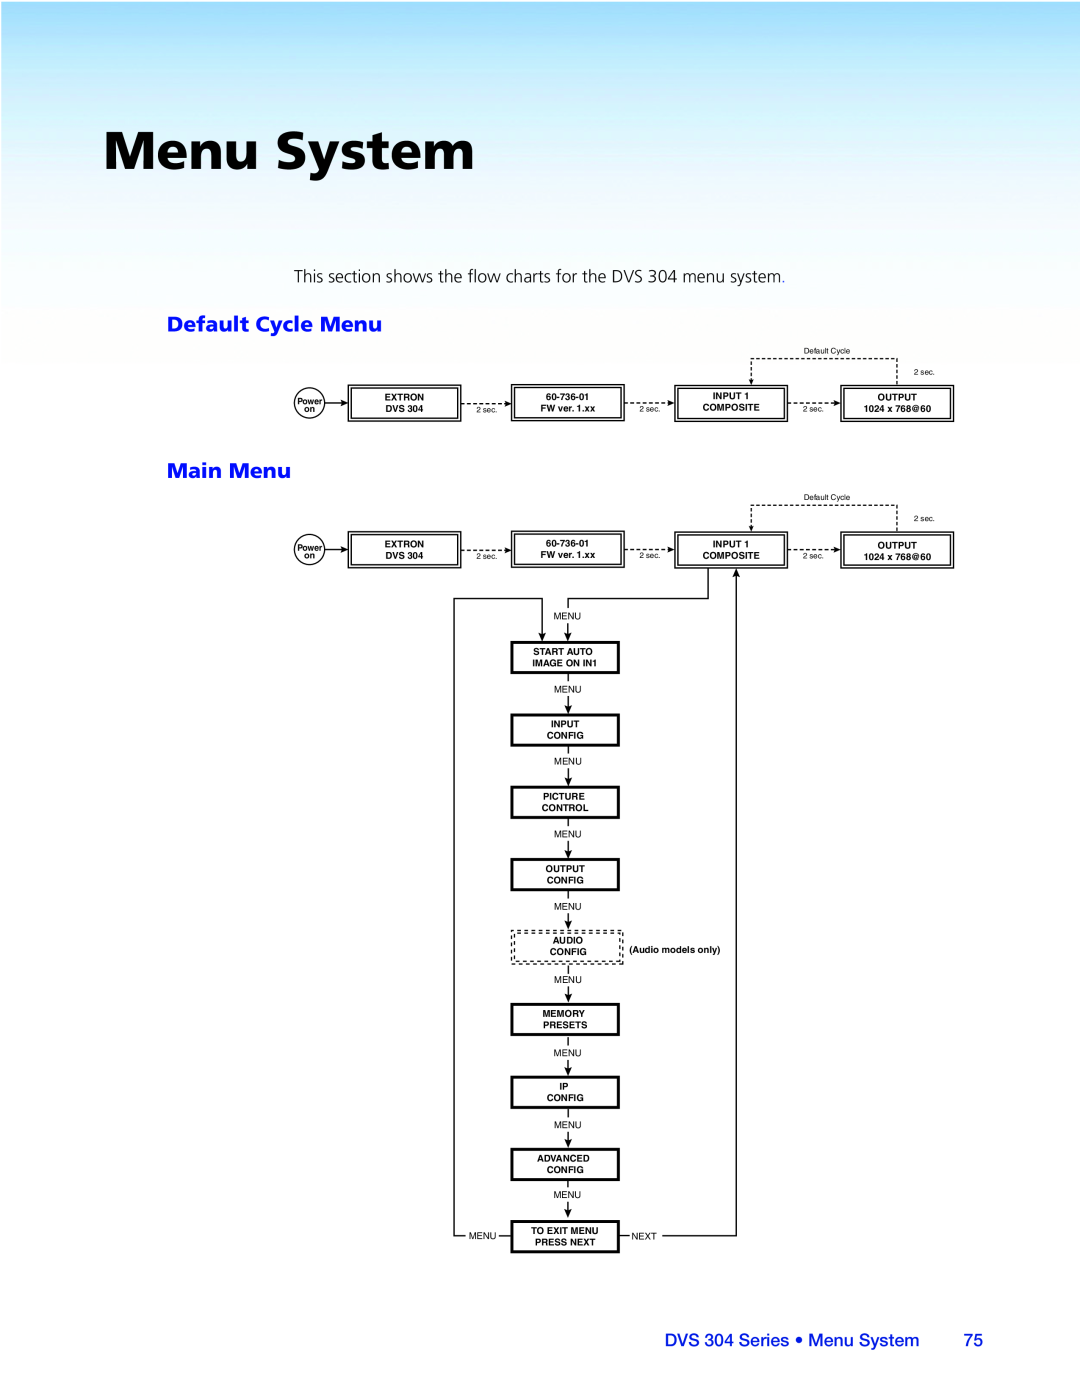 Extron electronic manual Default Cycle Menu, Main Menu, DVS 304 Series • Menu System 